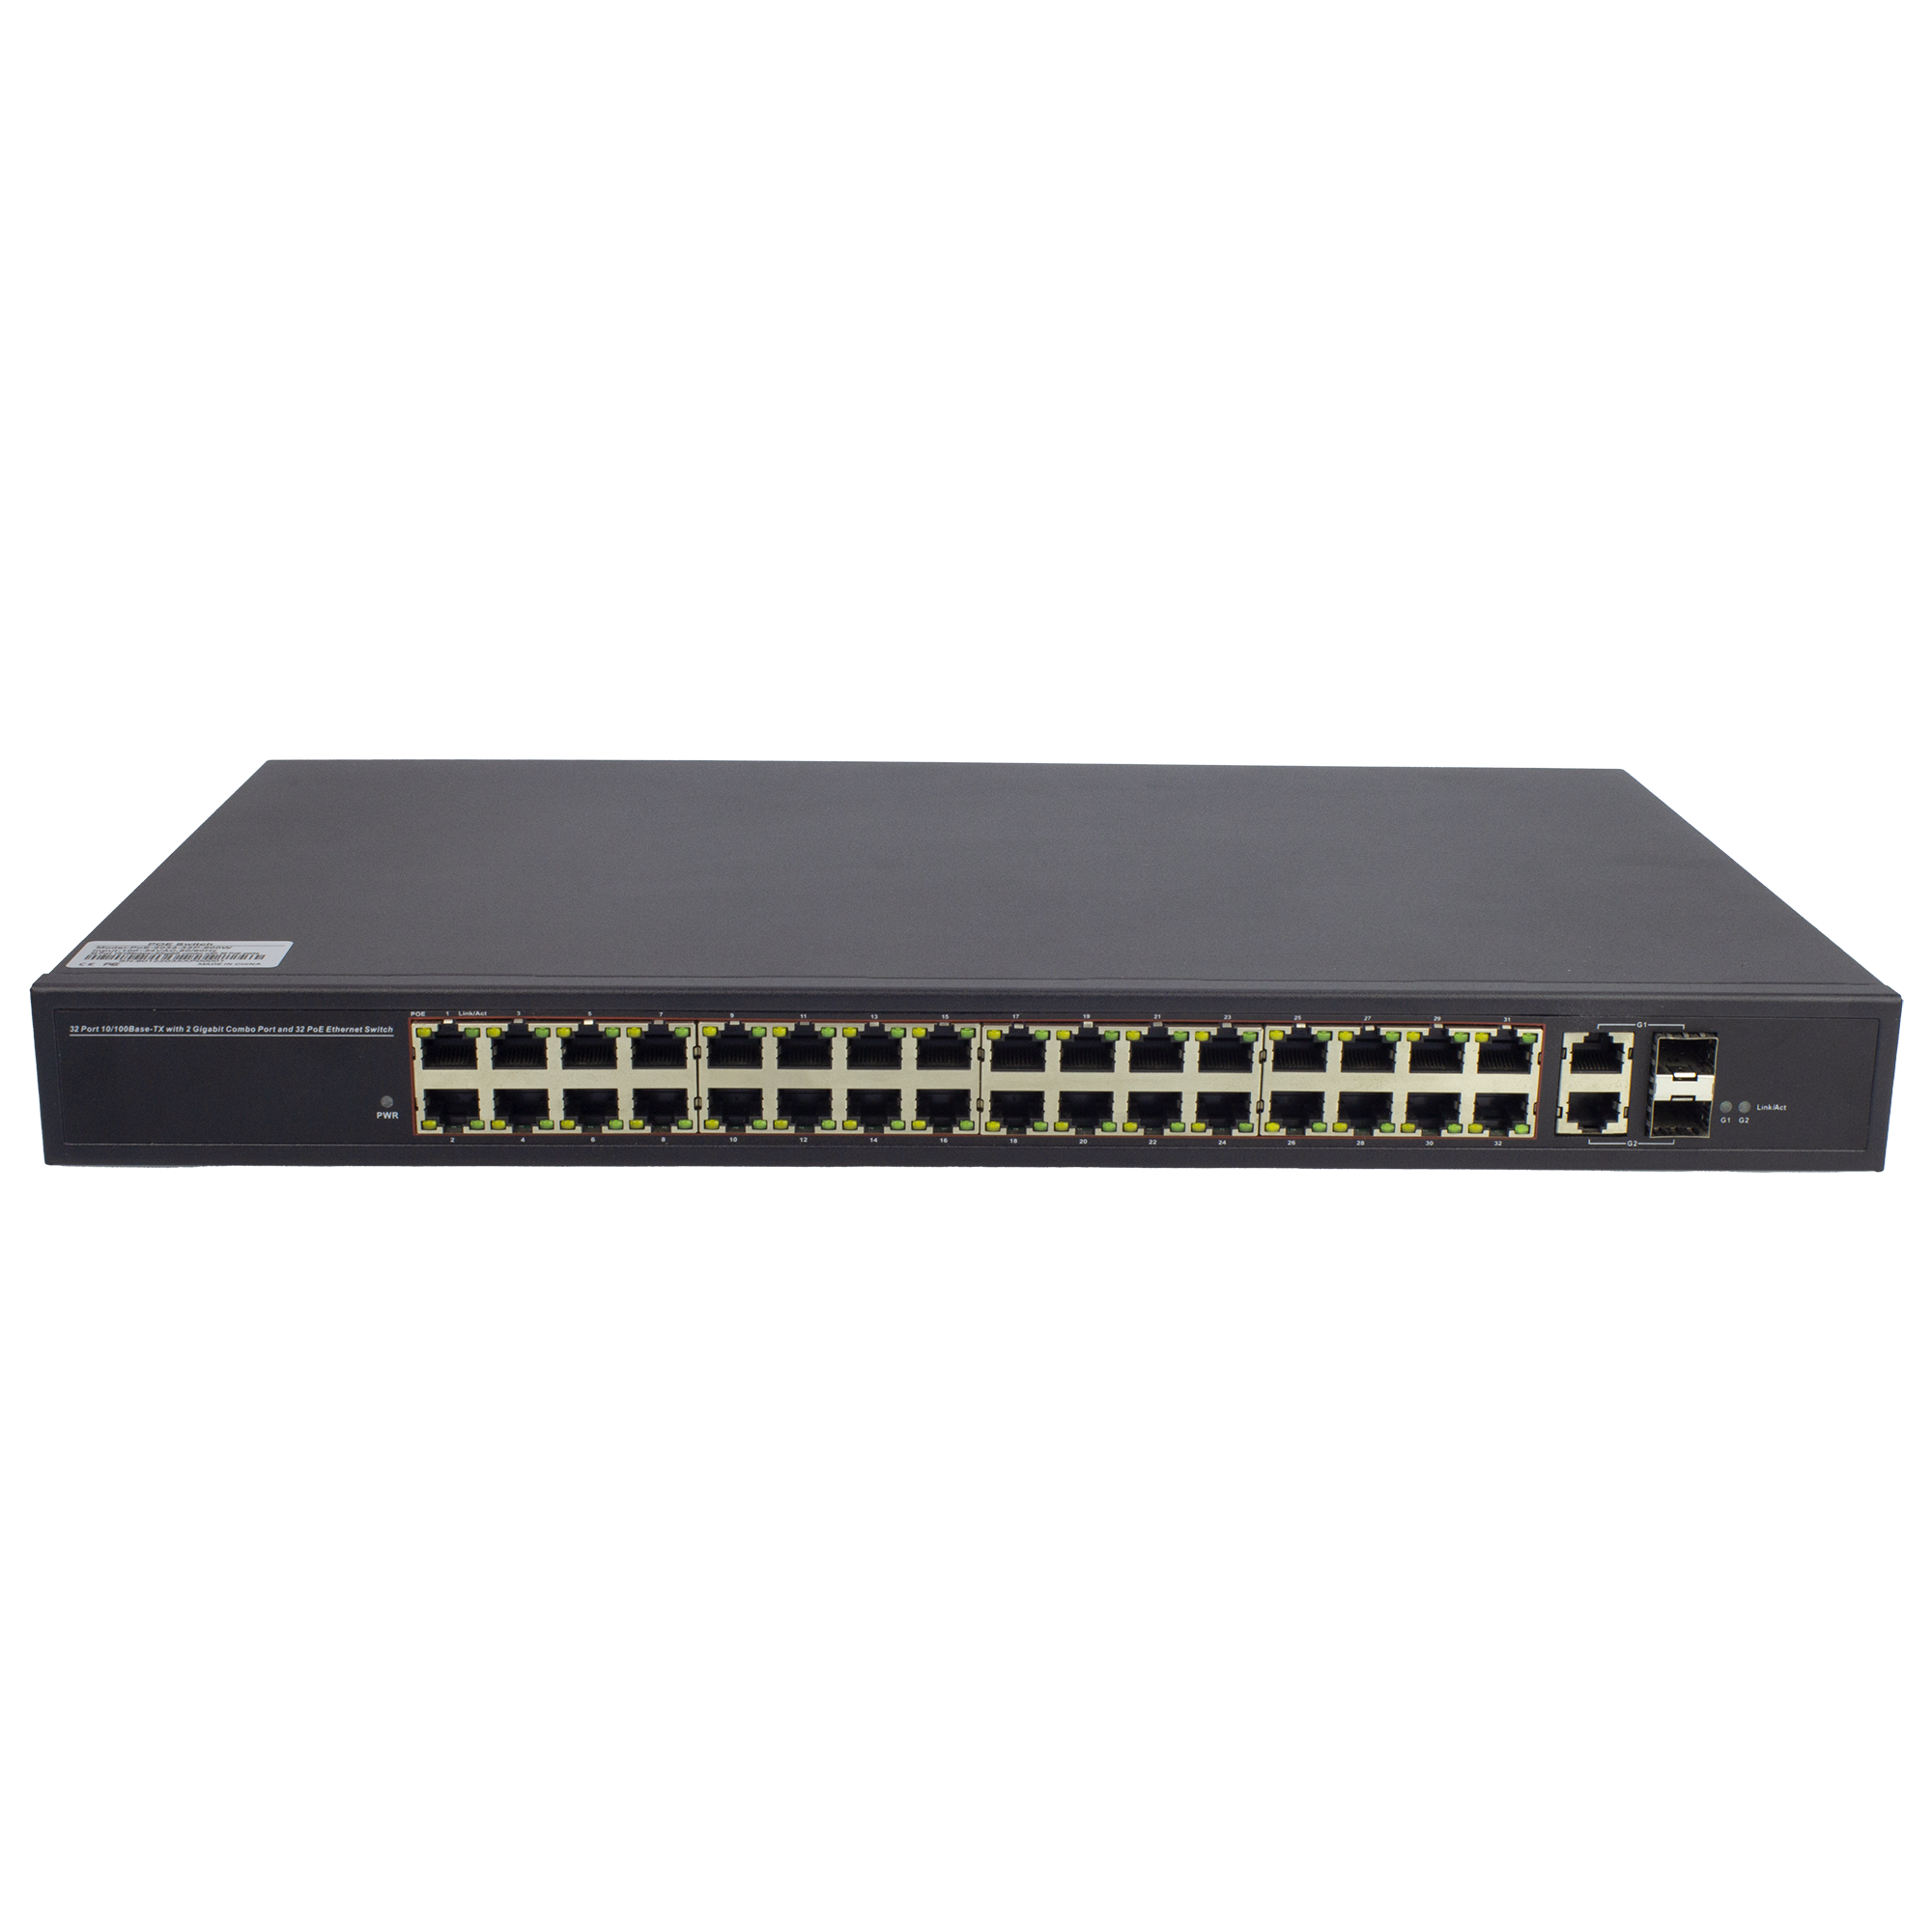 32 PoE Switch + 2 Combo Uplink port, 500W – UltraPoE